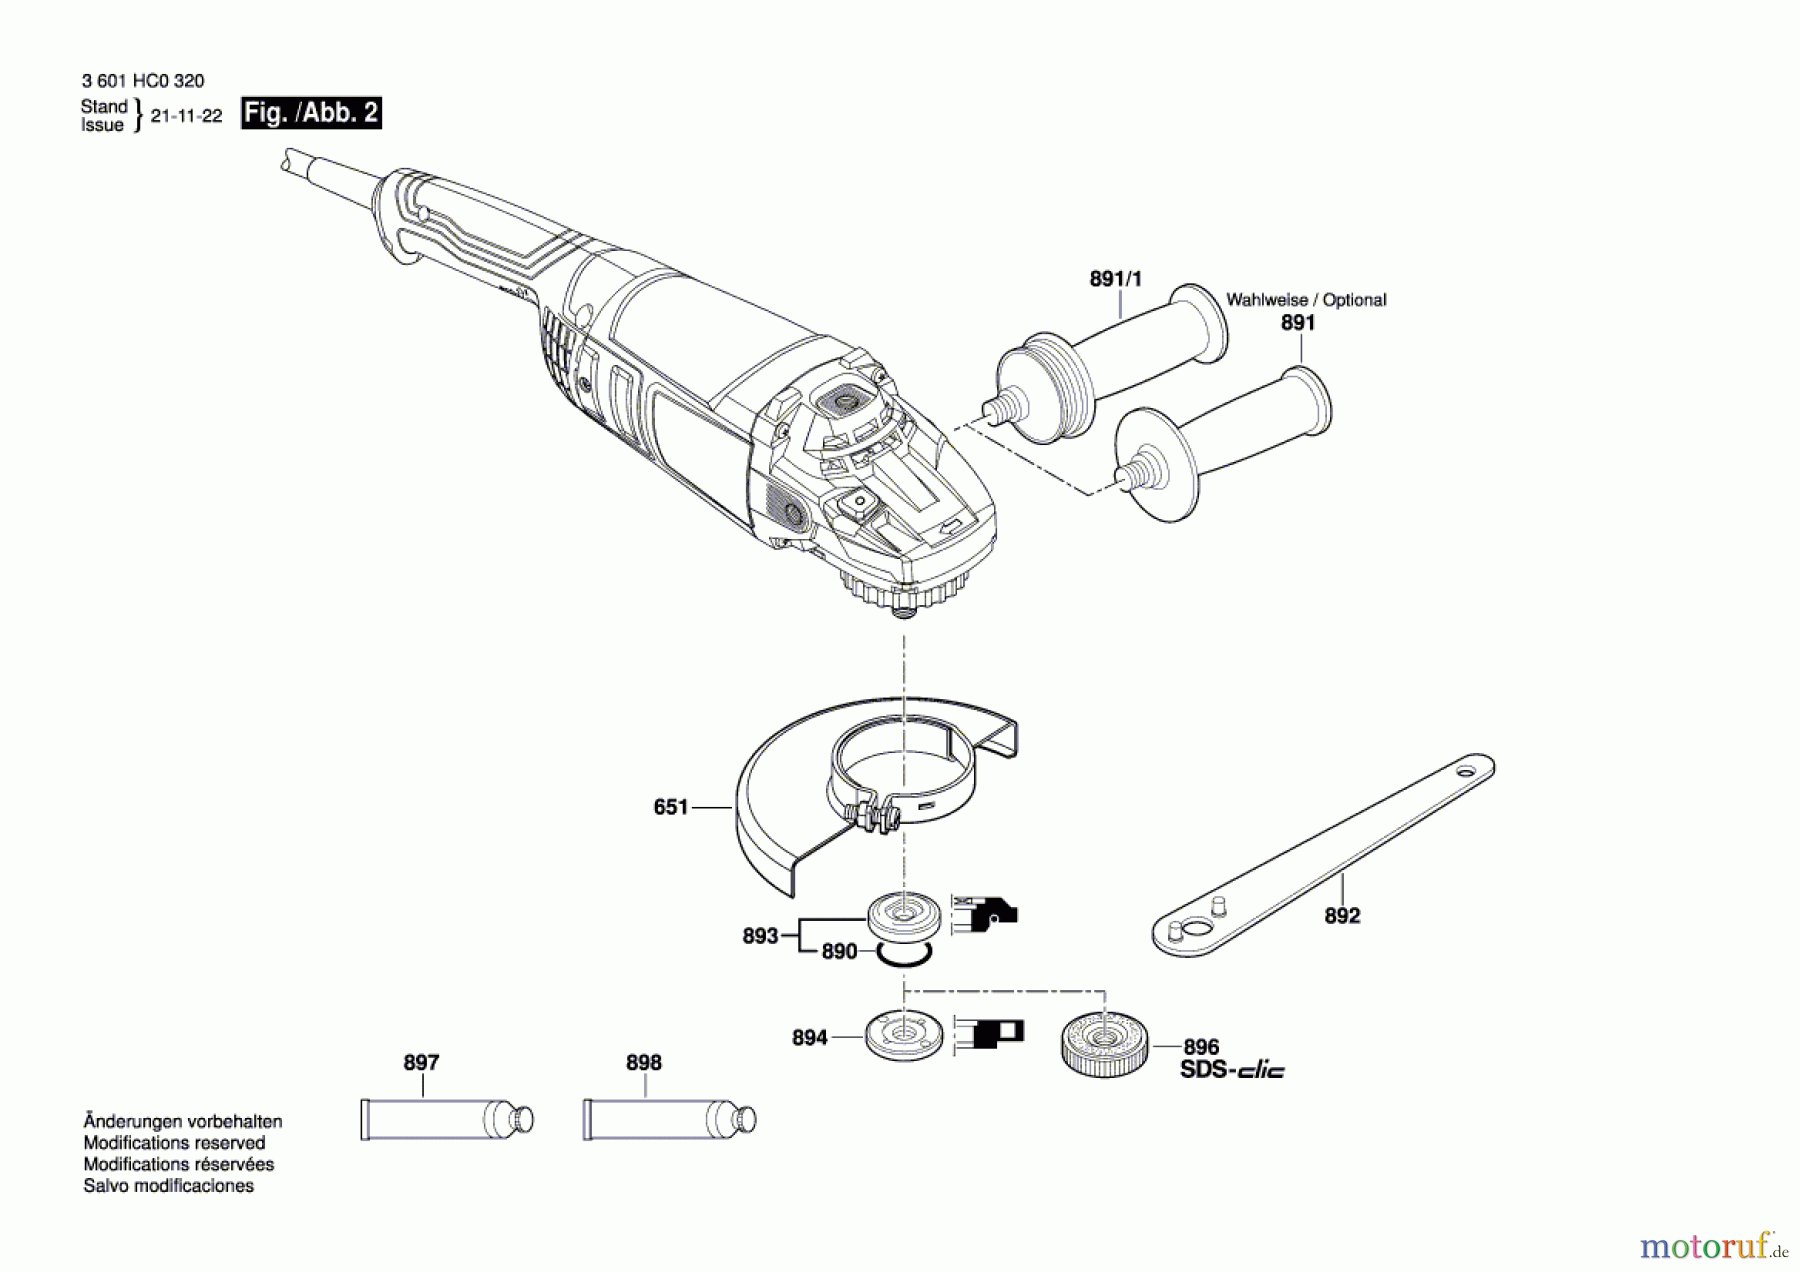  Bosch Werkzeug Winkelschleifer GWS 22-180 J Seite 2